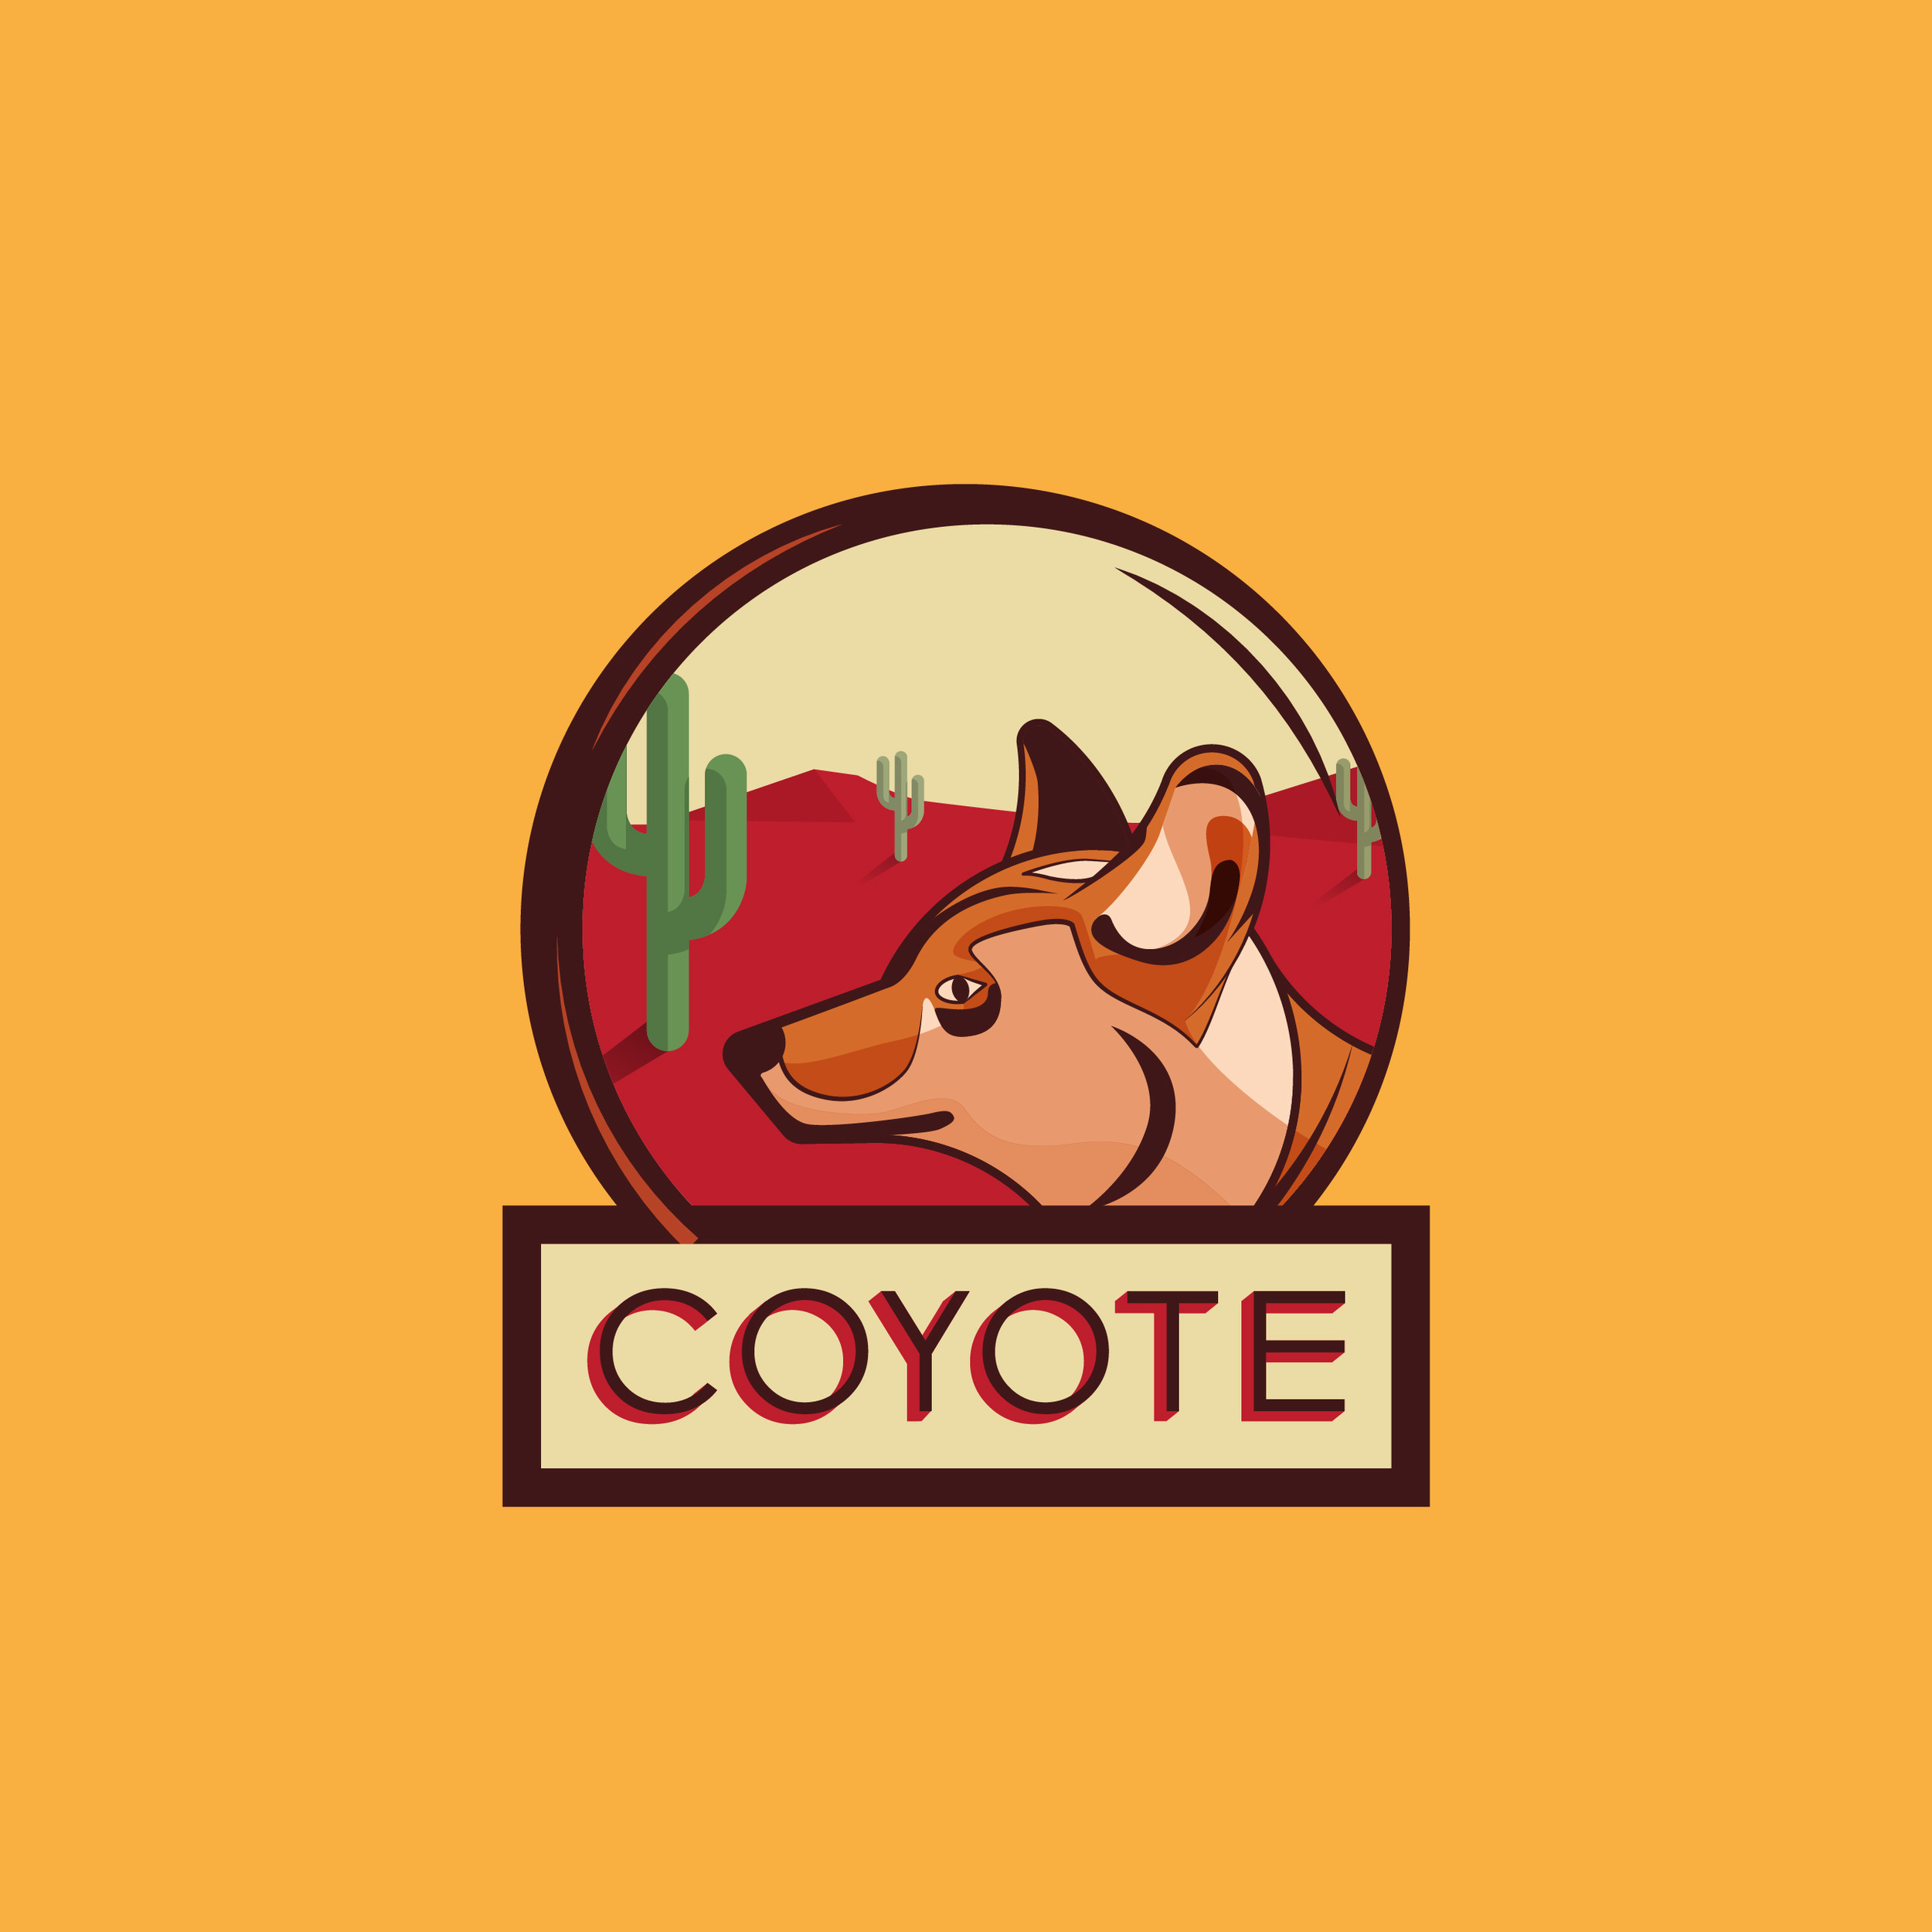 Coyote_Logos-04.jpg